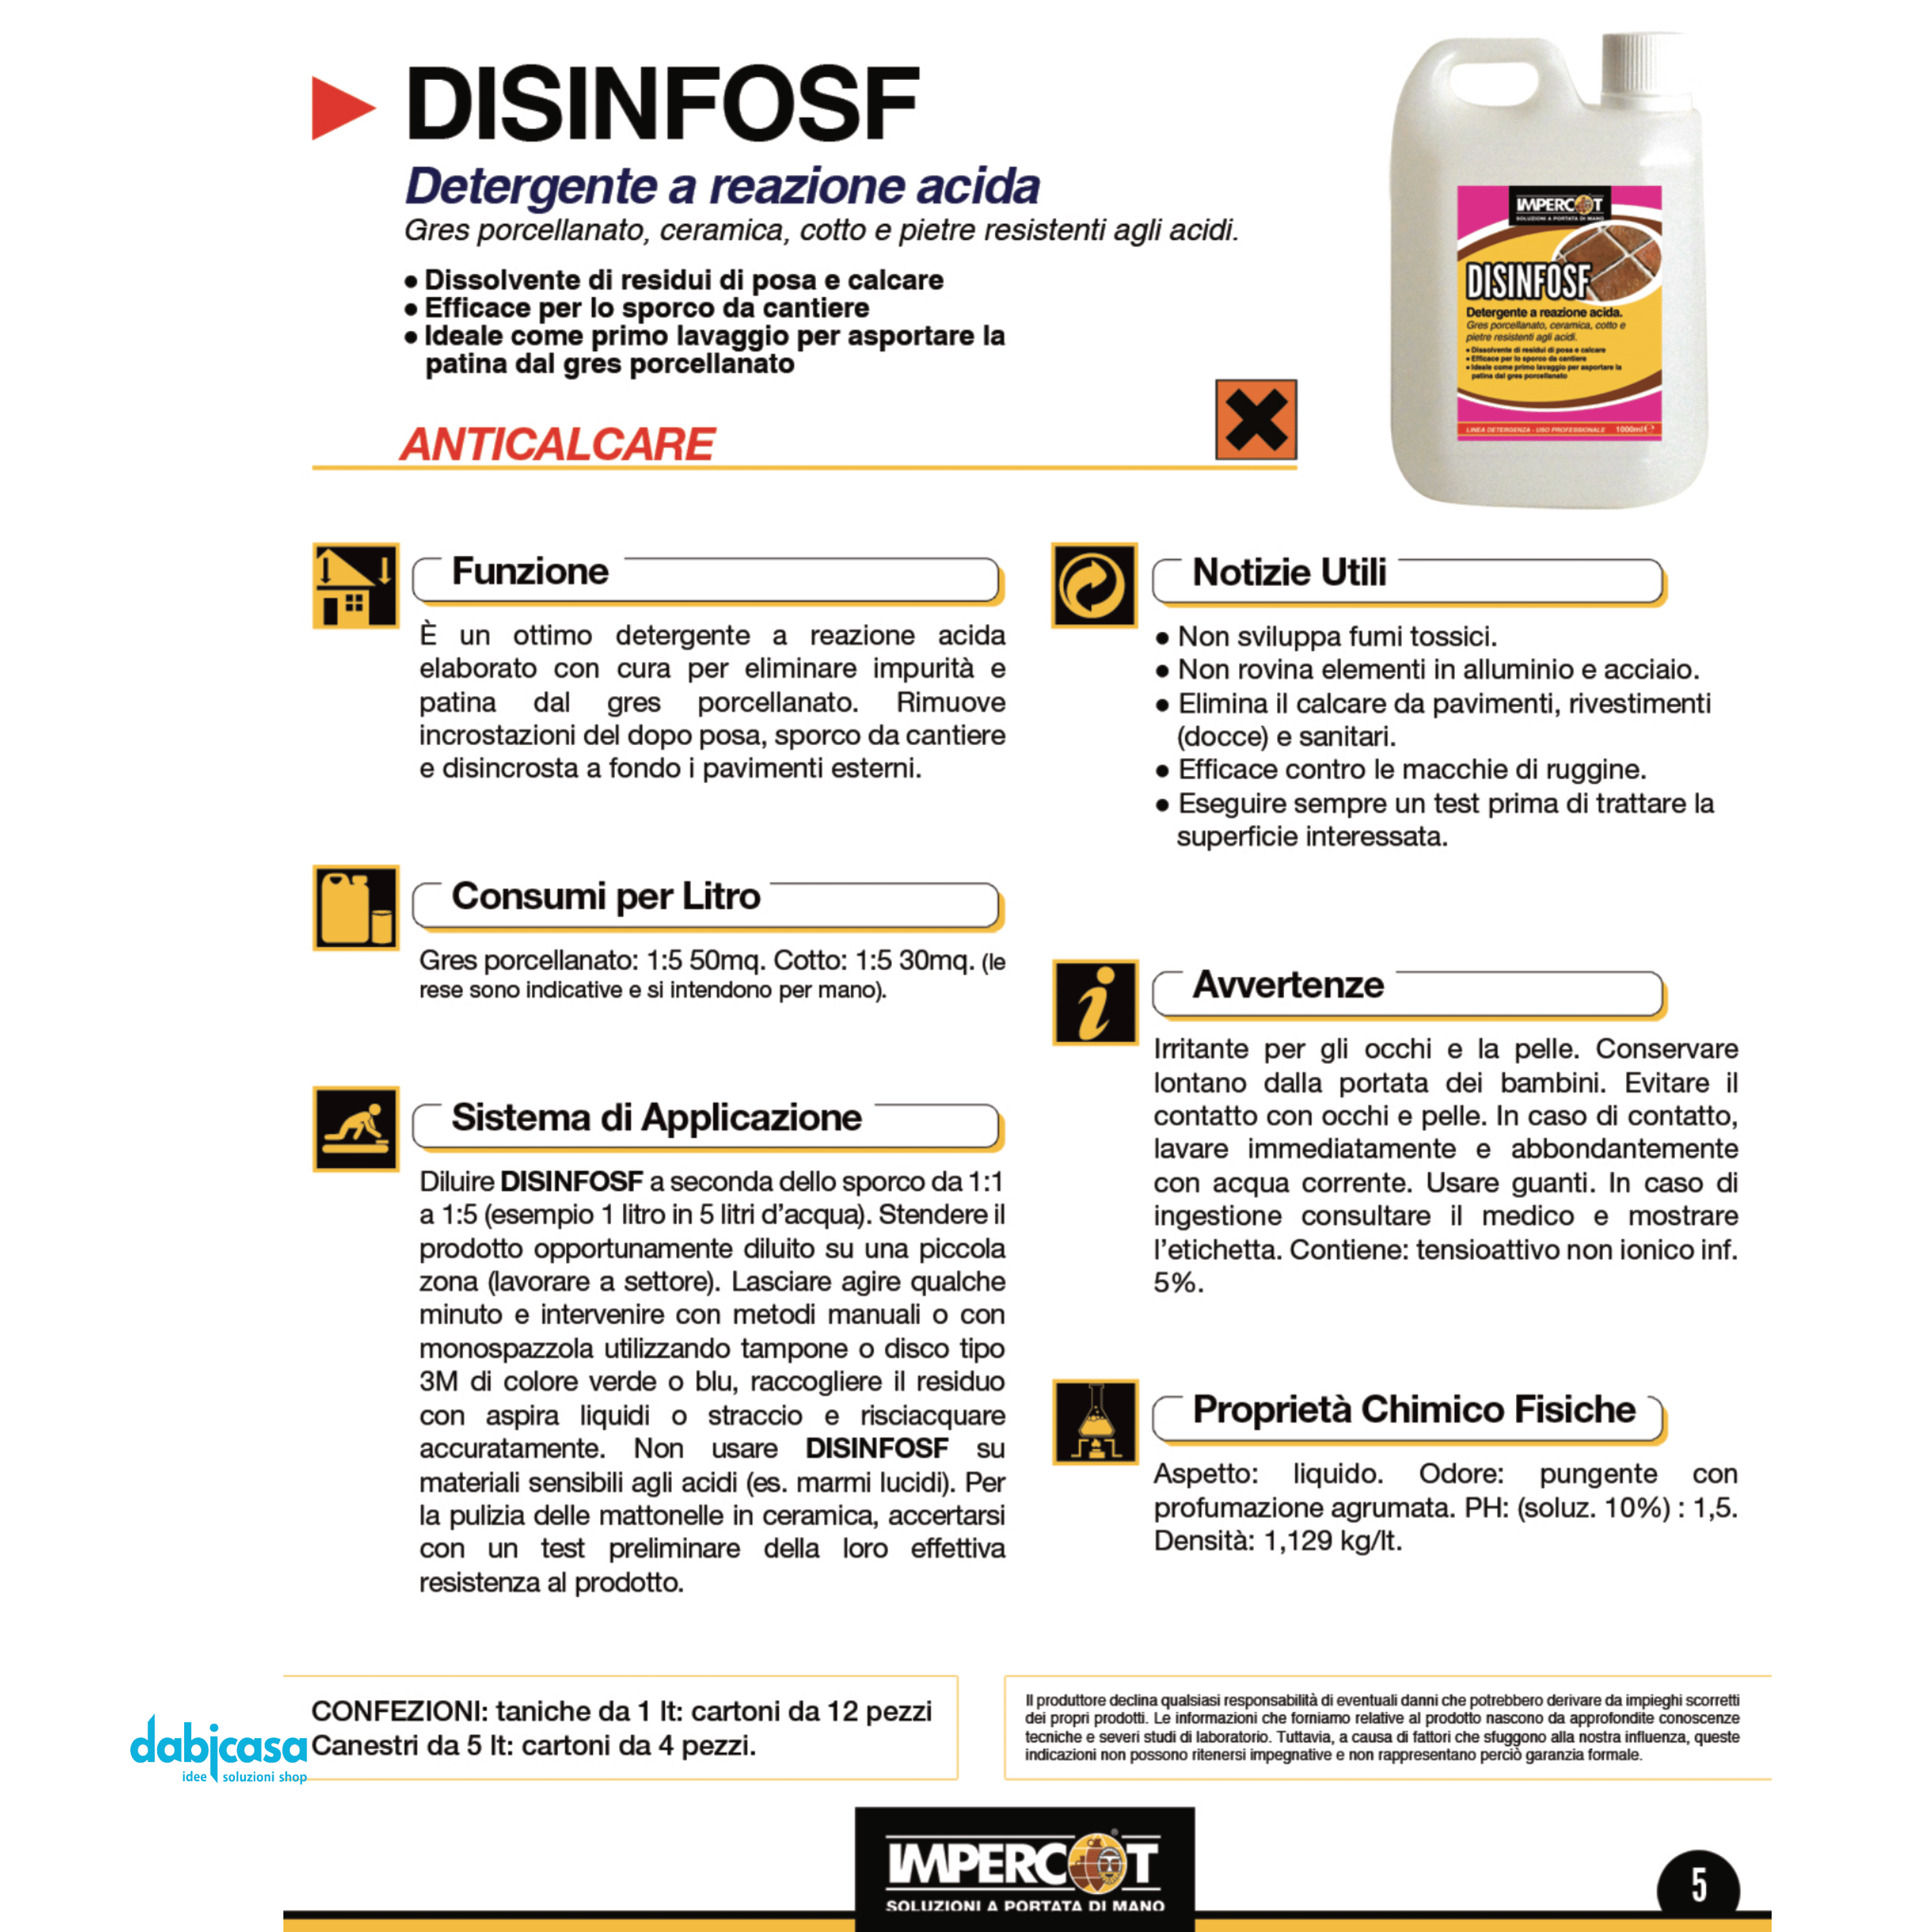 Impercot "Disinfosf" Detergente A Reazione Rapida